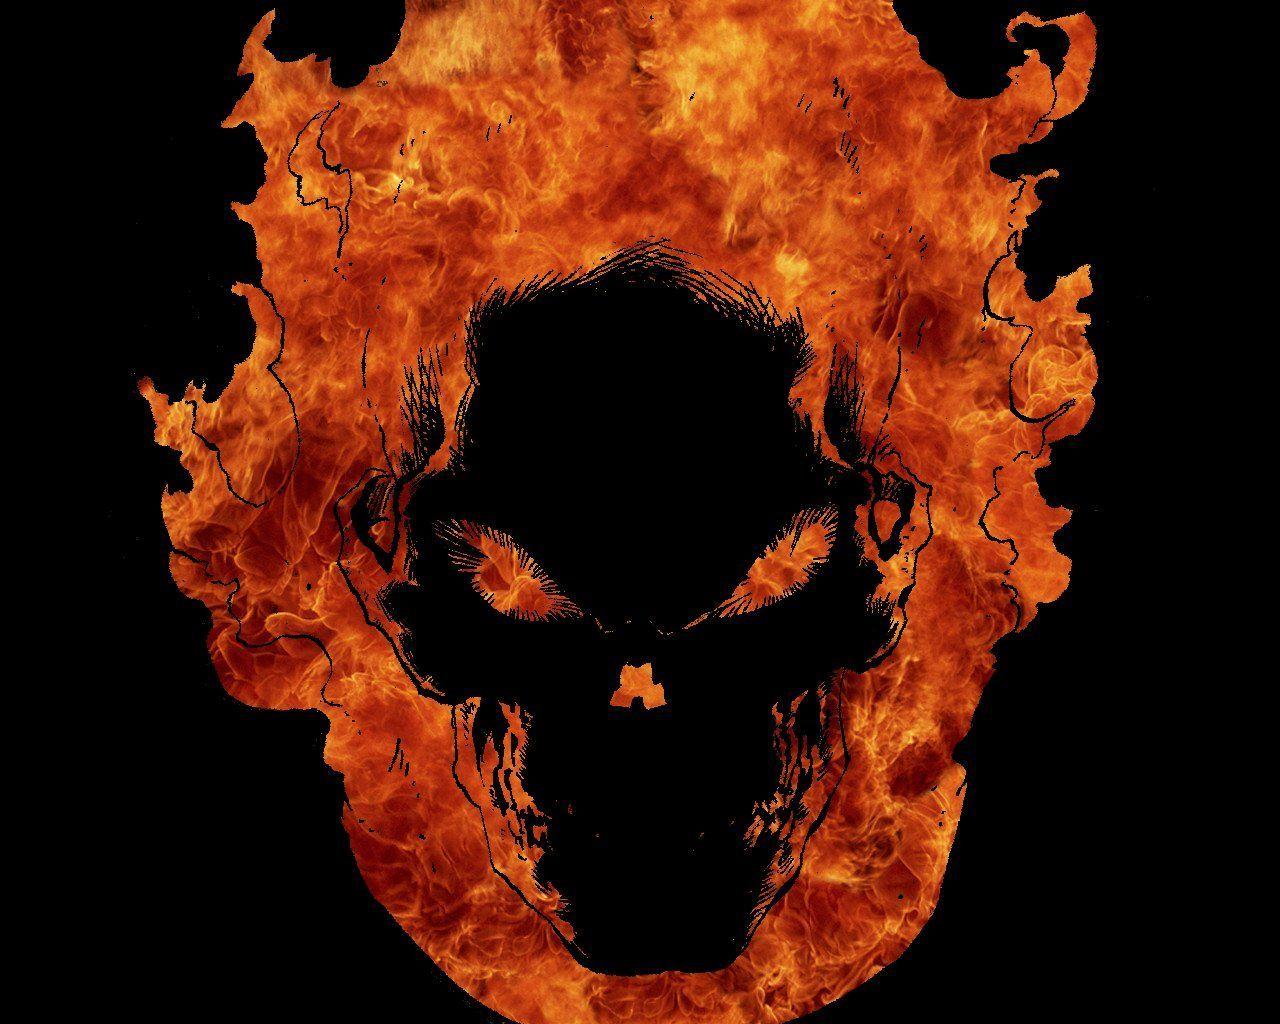 Ghost Rider Skull Wallpaper